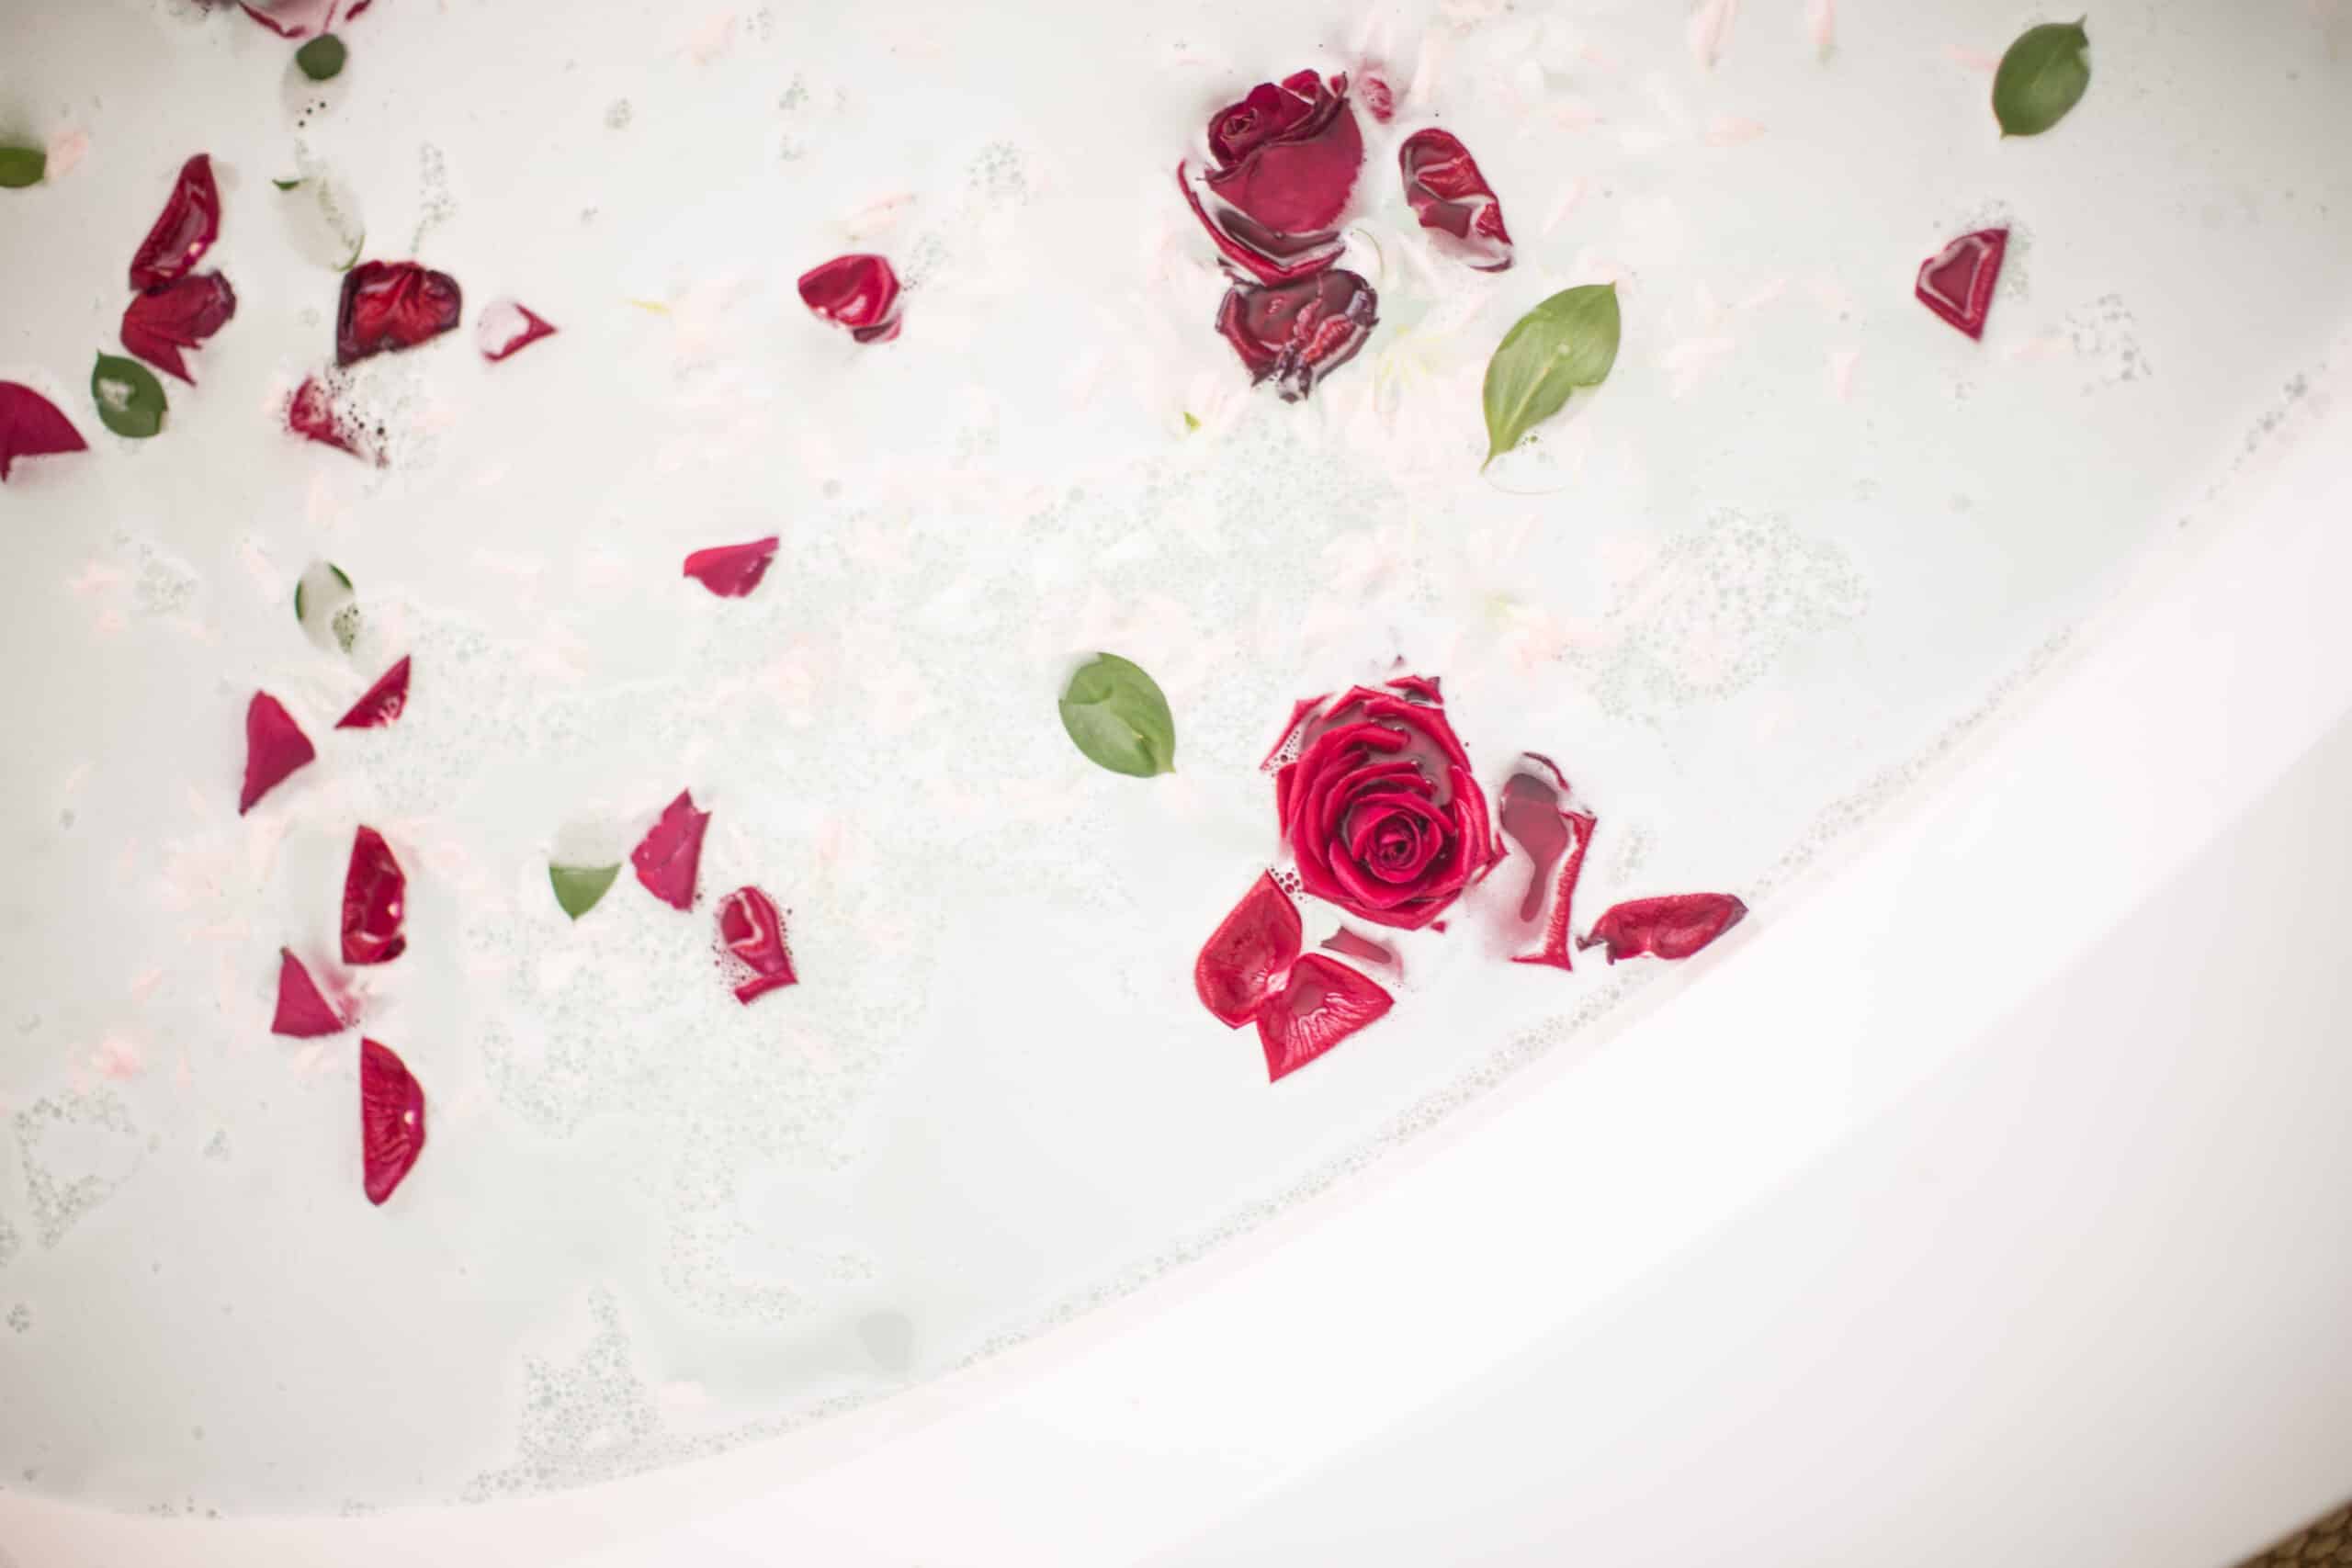 Beautiful rose petal bath